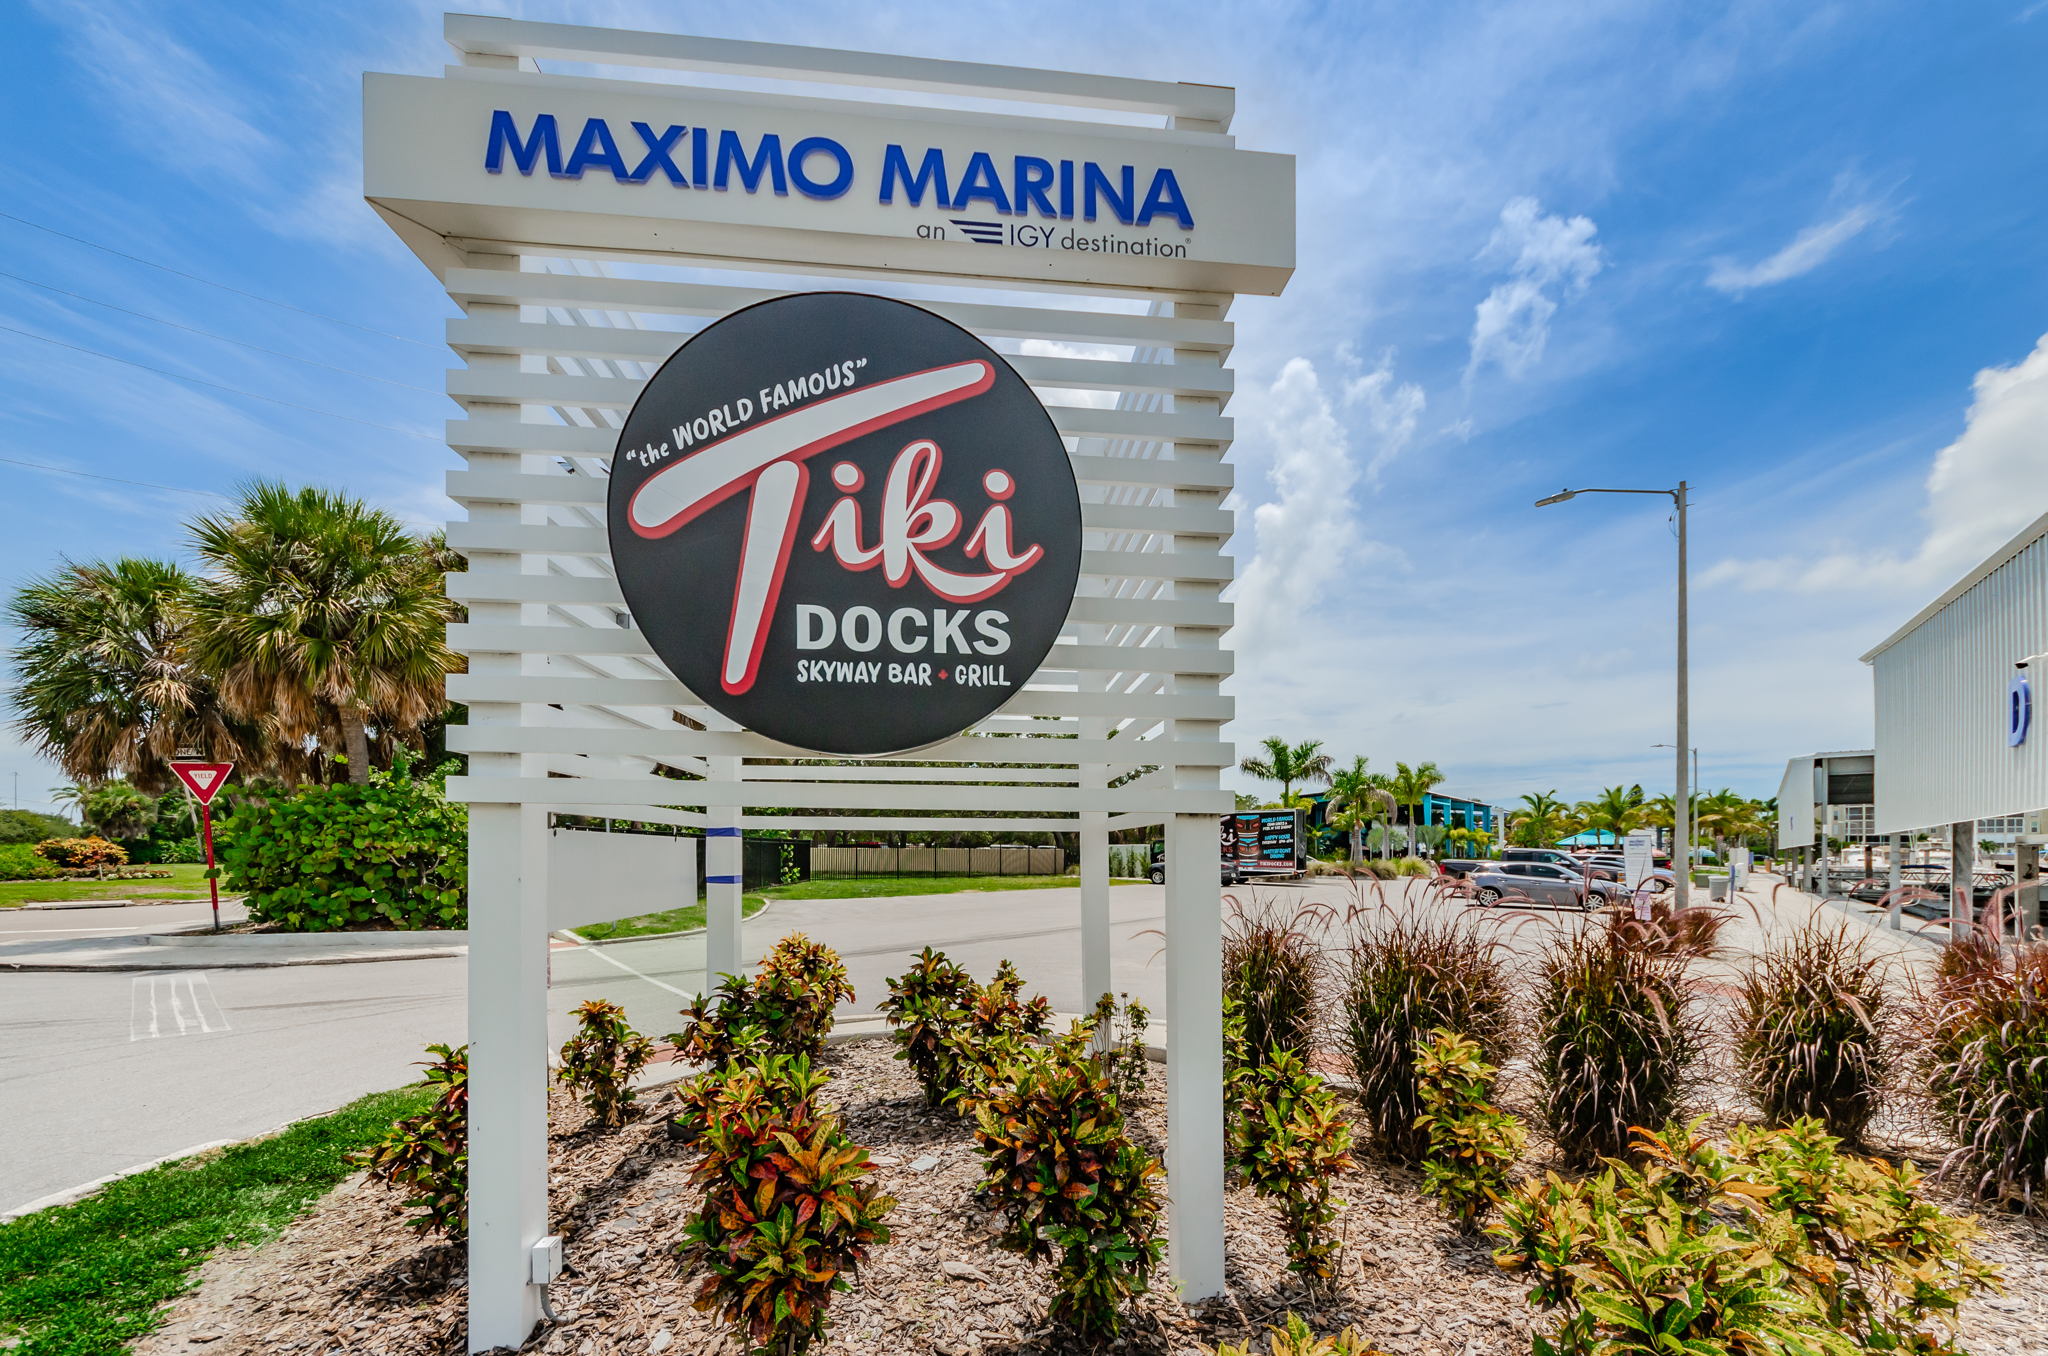 Maximo Marina & Tiki Docks Sign